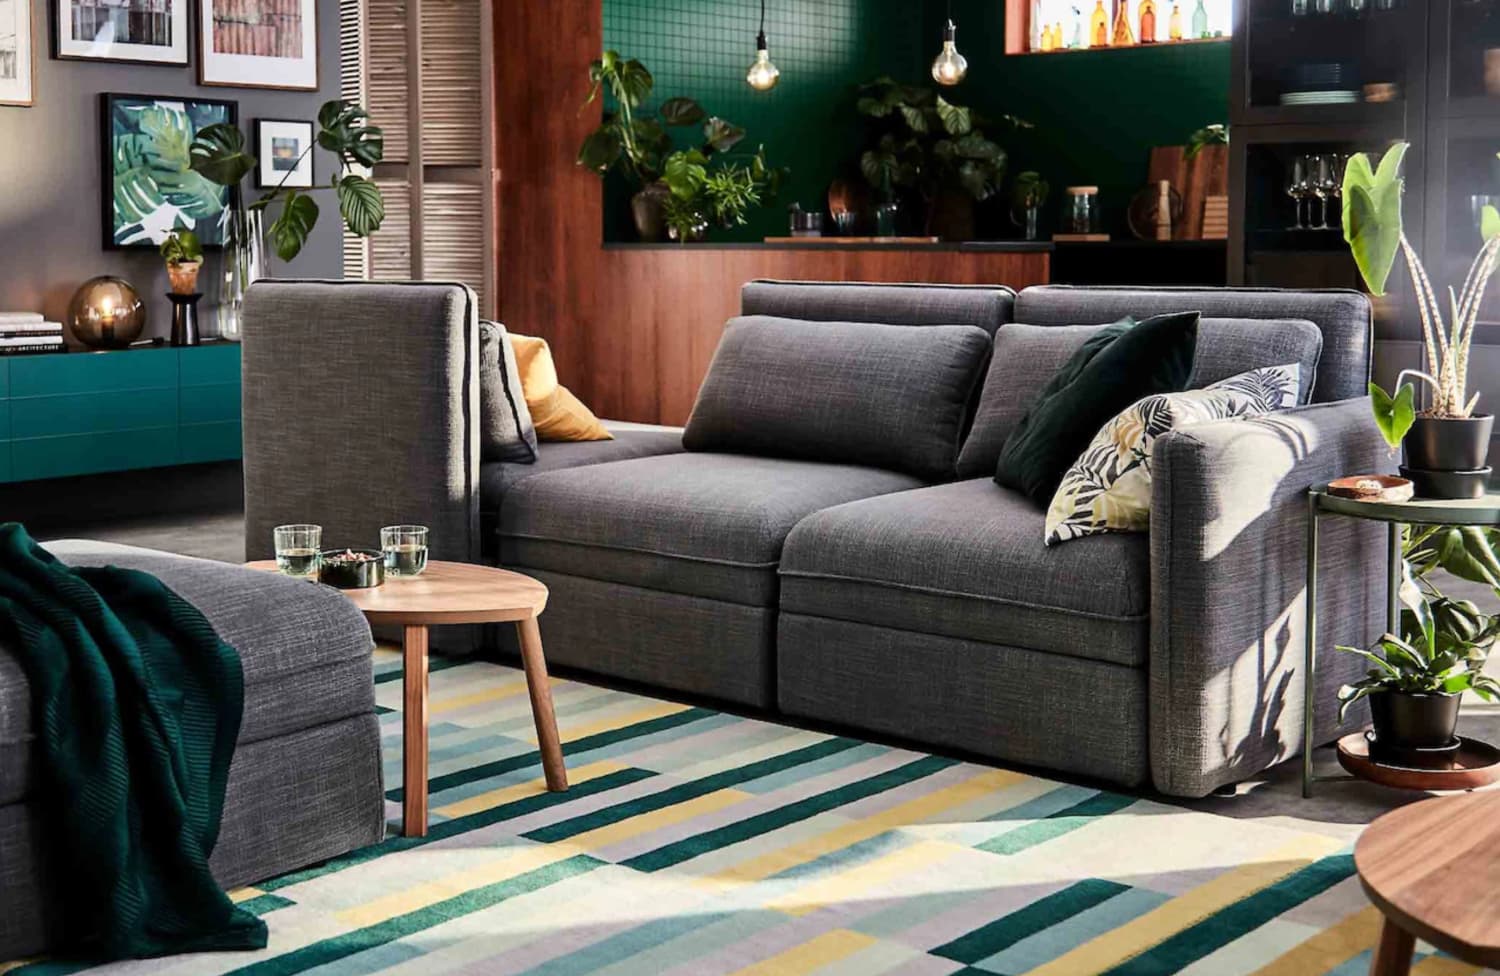 Unique Ikea Living Room Furniture for Simple Design